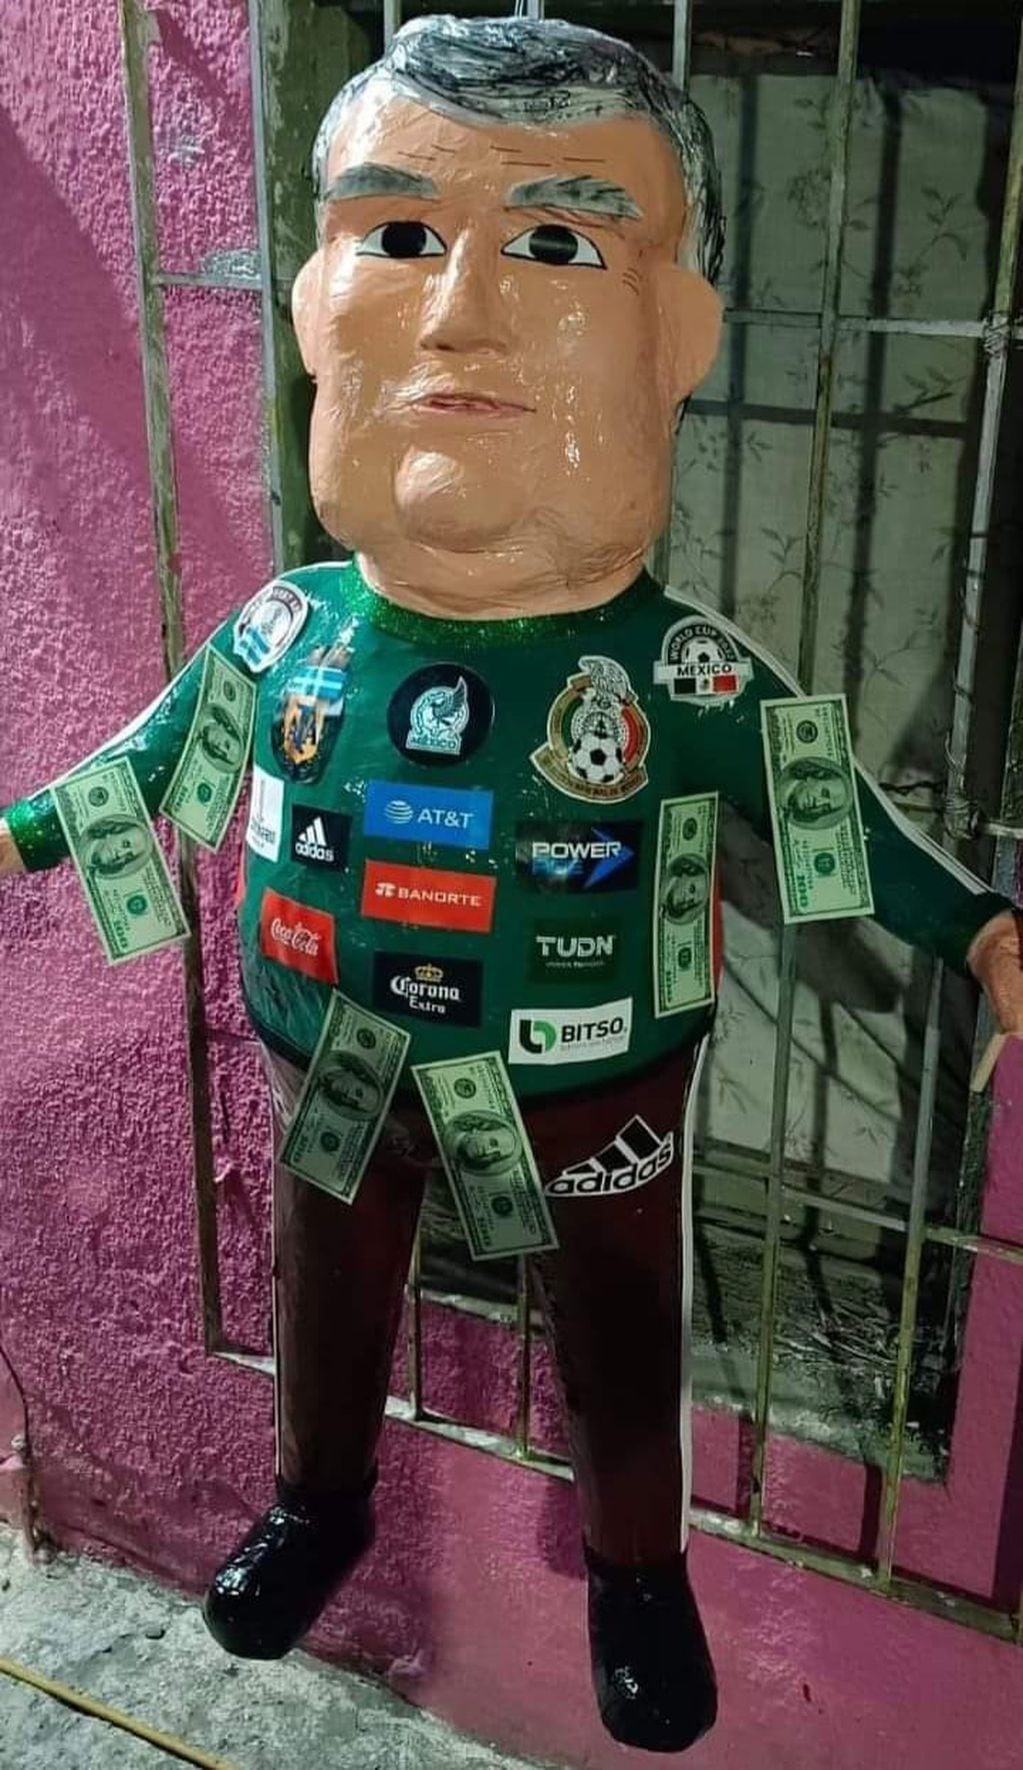 Otra de las imágenes de la piñata compartida en redes sociales por seguidores de la Selección Mexicana.